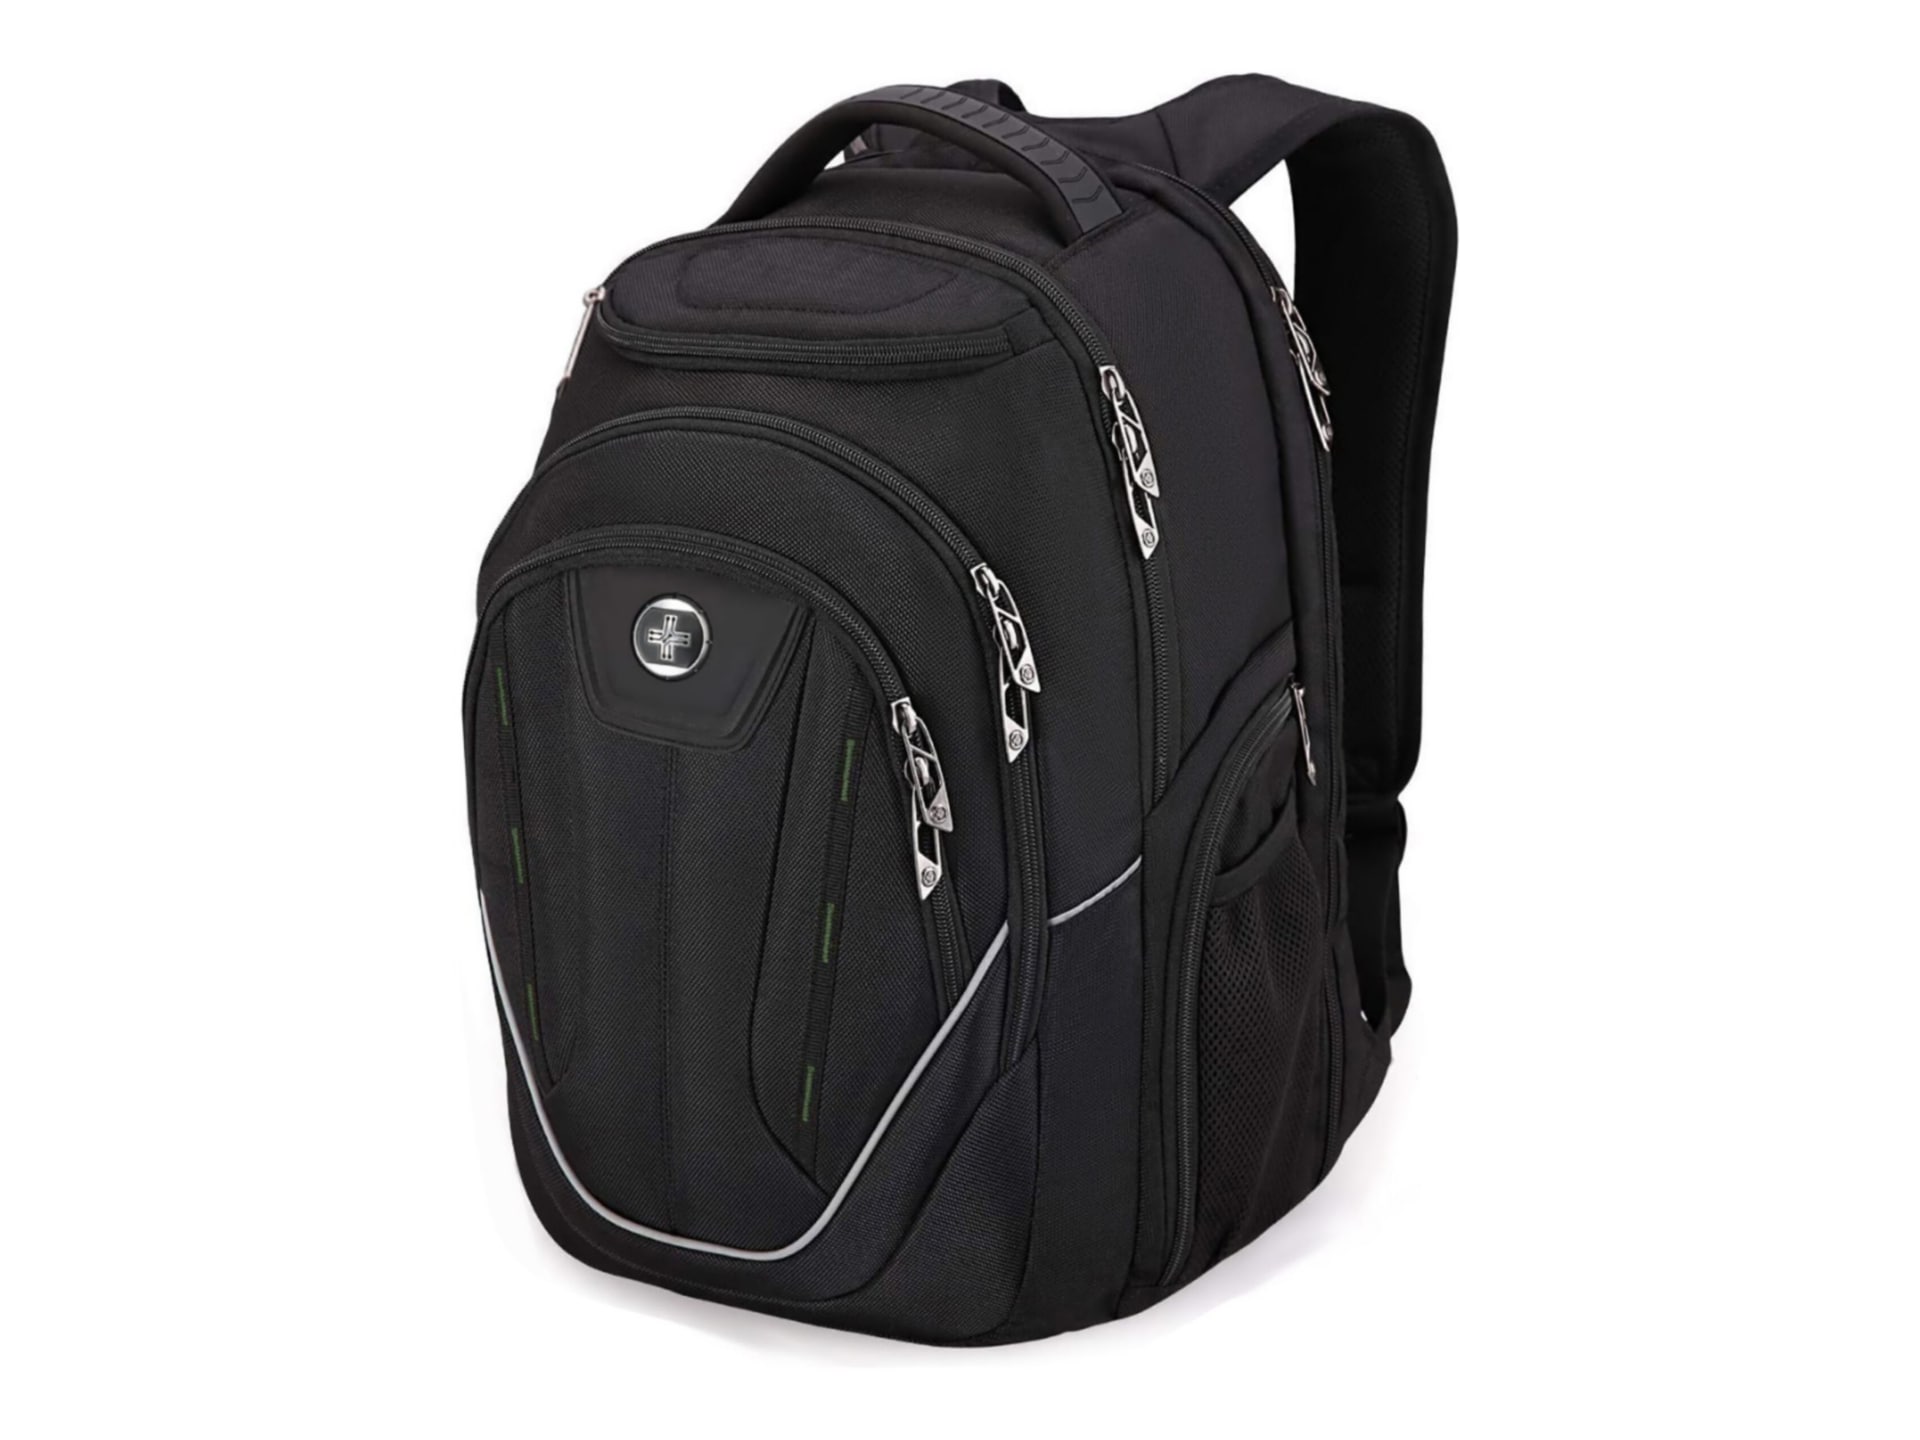 Swissdigital TERABYTE F J16BTF-21 Carrying Case Backpack for 15.6" Laptop - Black/Green